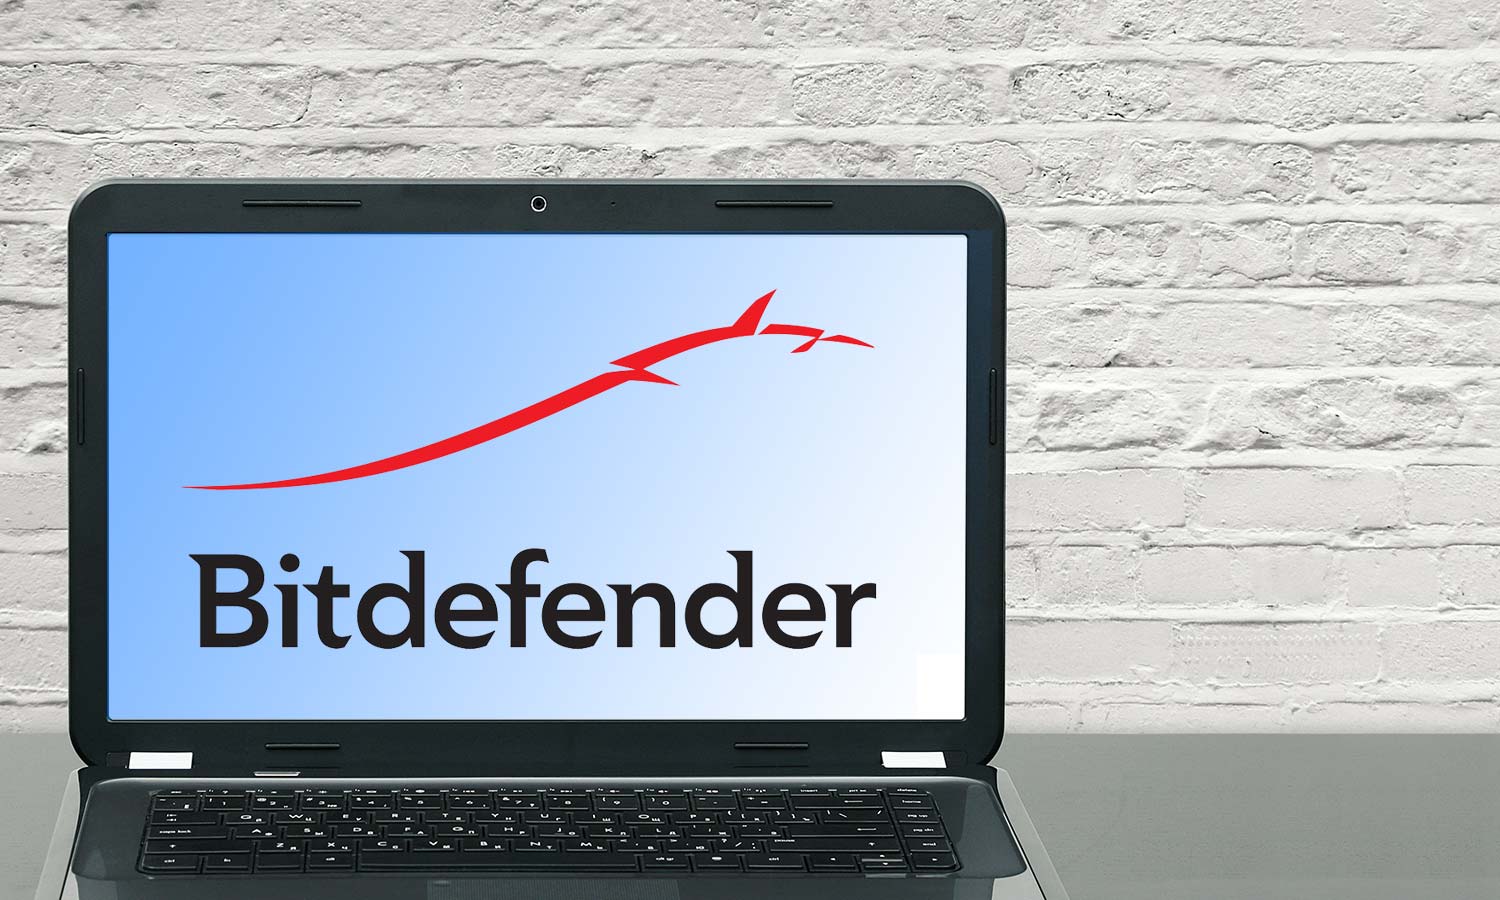 Nodefender review